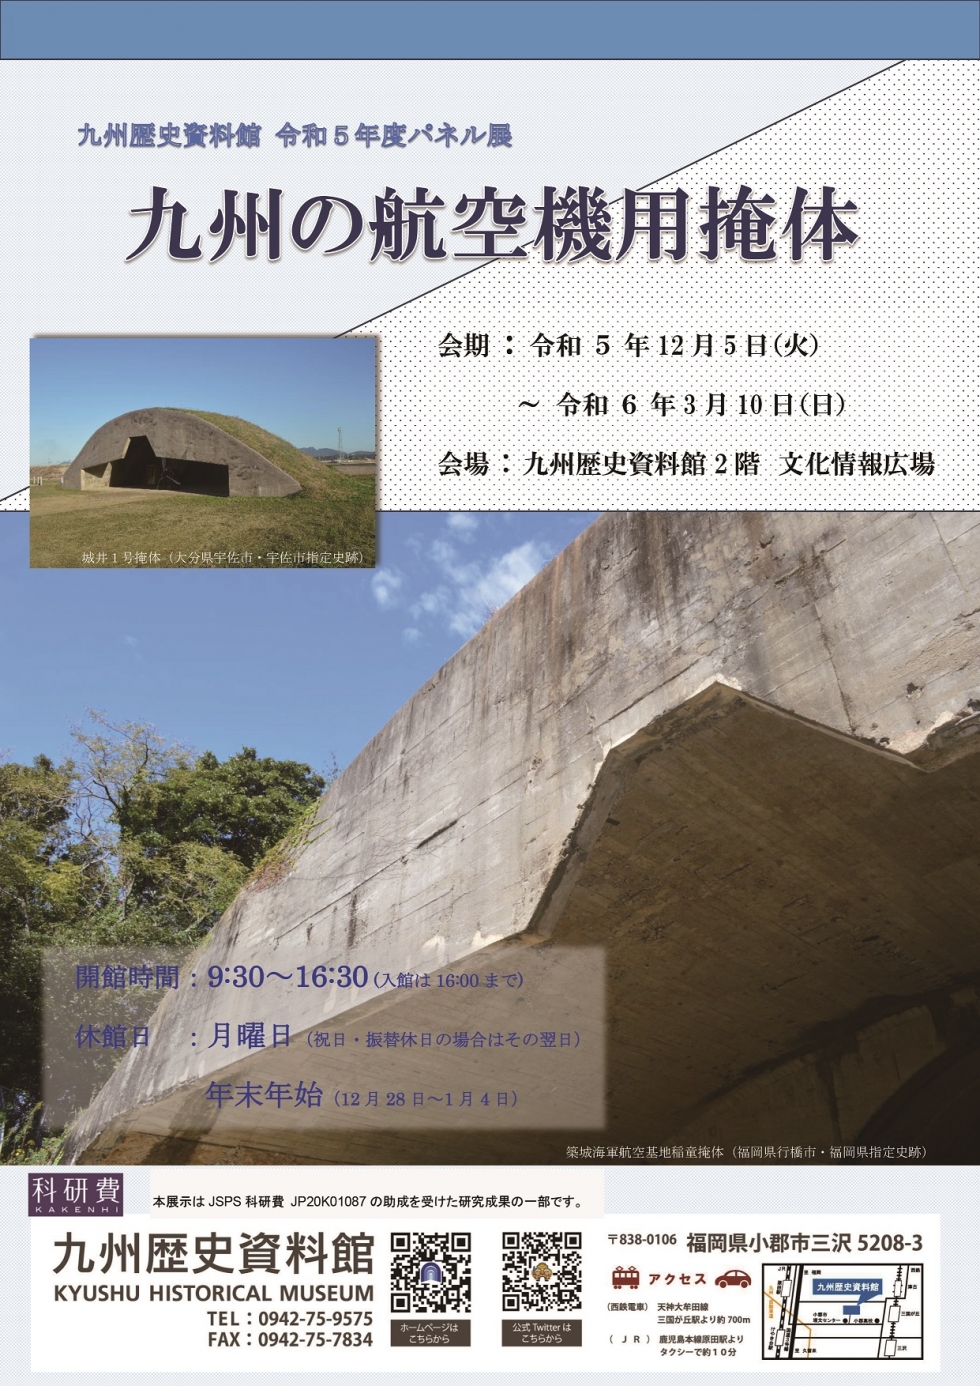 九州歴史資料館パネル展「九州の航空機用掩体」